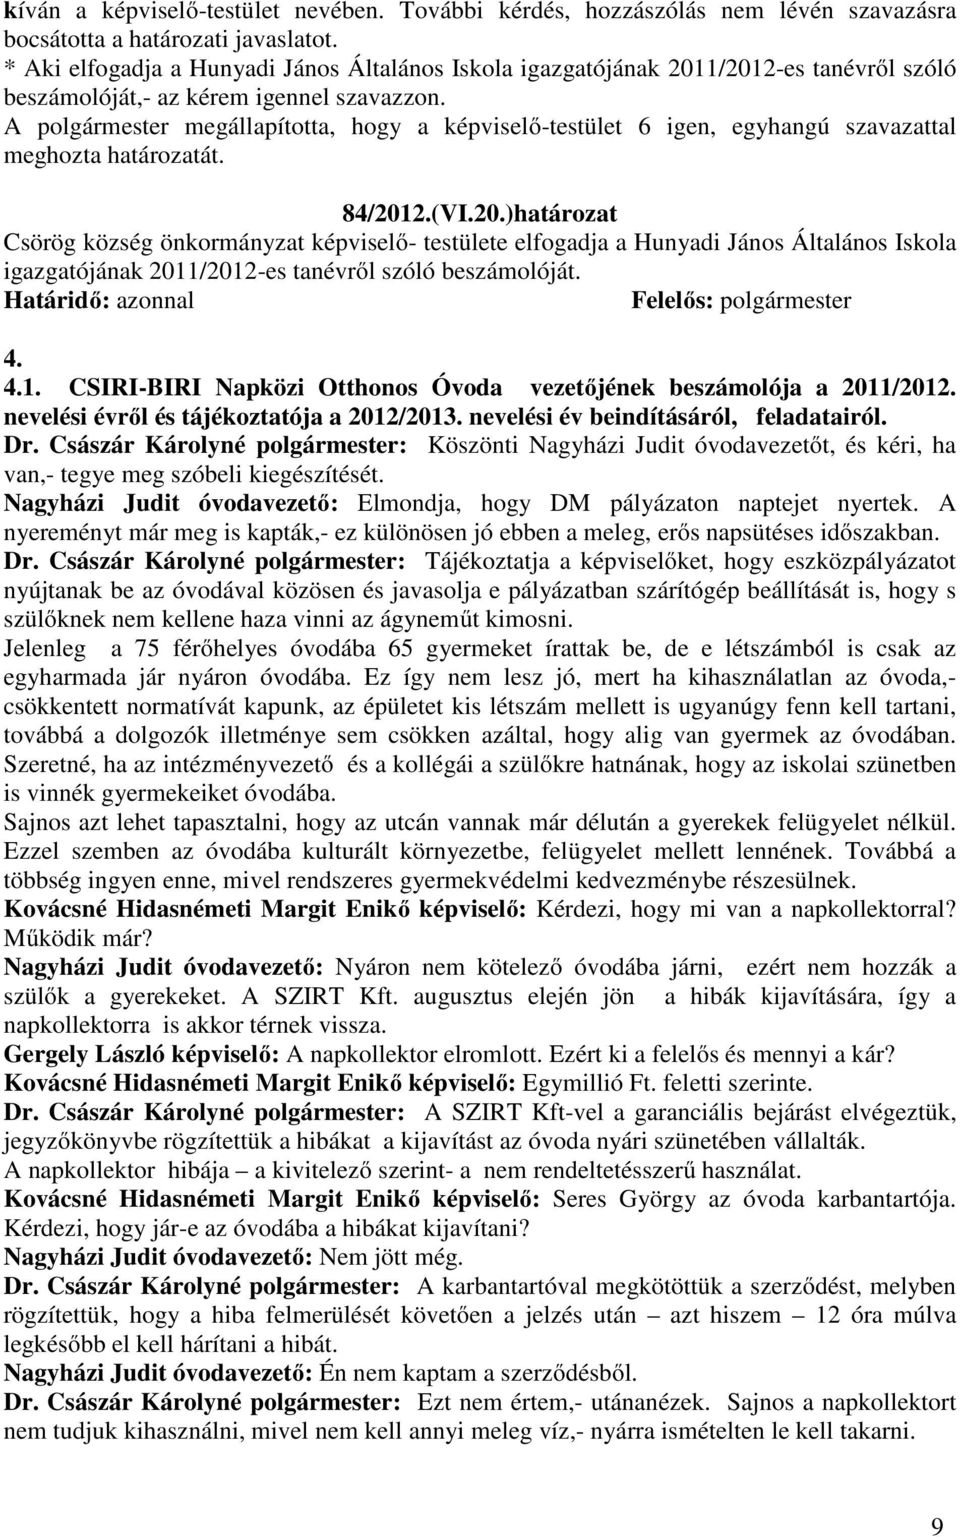 1/2012-es tanévről szóló beszámolóját,- az kérem igennel szavazzon. 84/2012.(VI.20.)határozat Csörög község önkormányzat képviselő- testülete elfogadja a Hunyadi János Általános Iskola igazgatójának 2011/2012-es tanévről szóló beszámolóját.